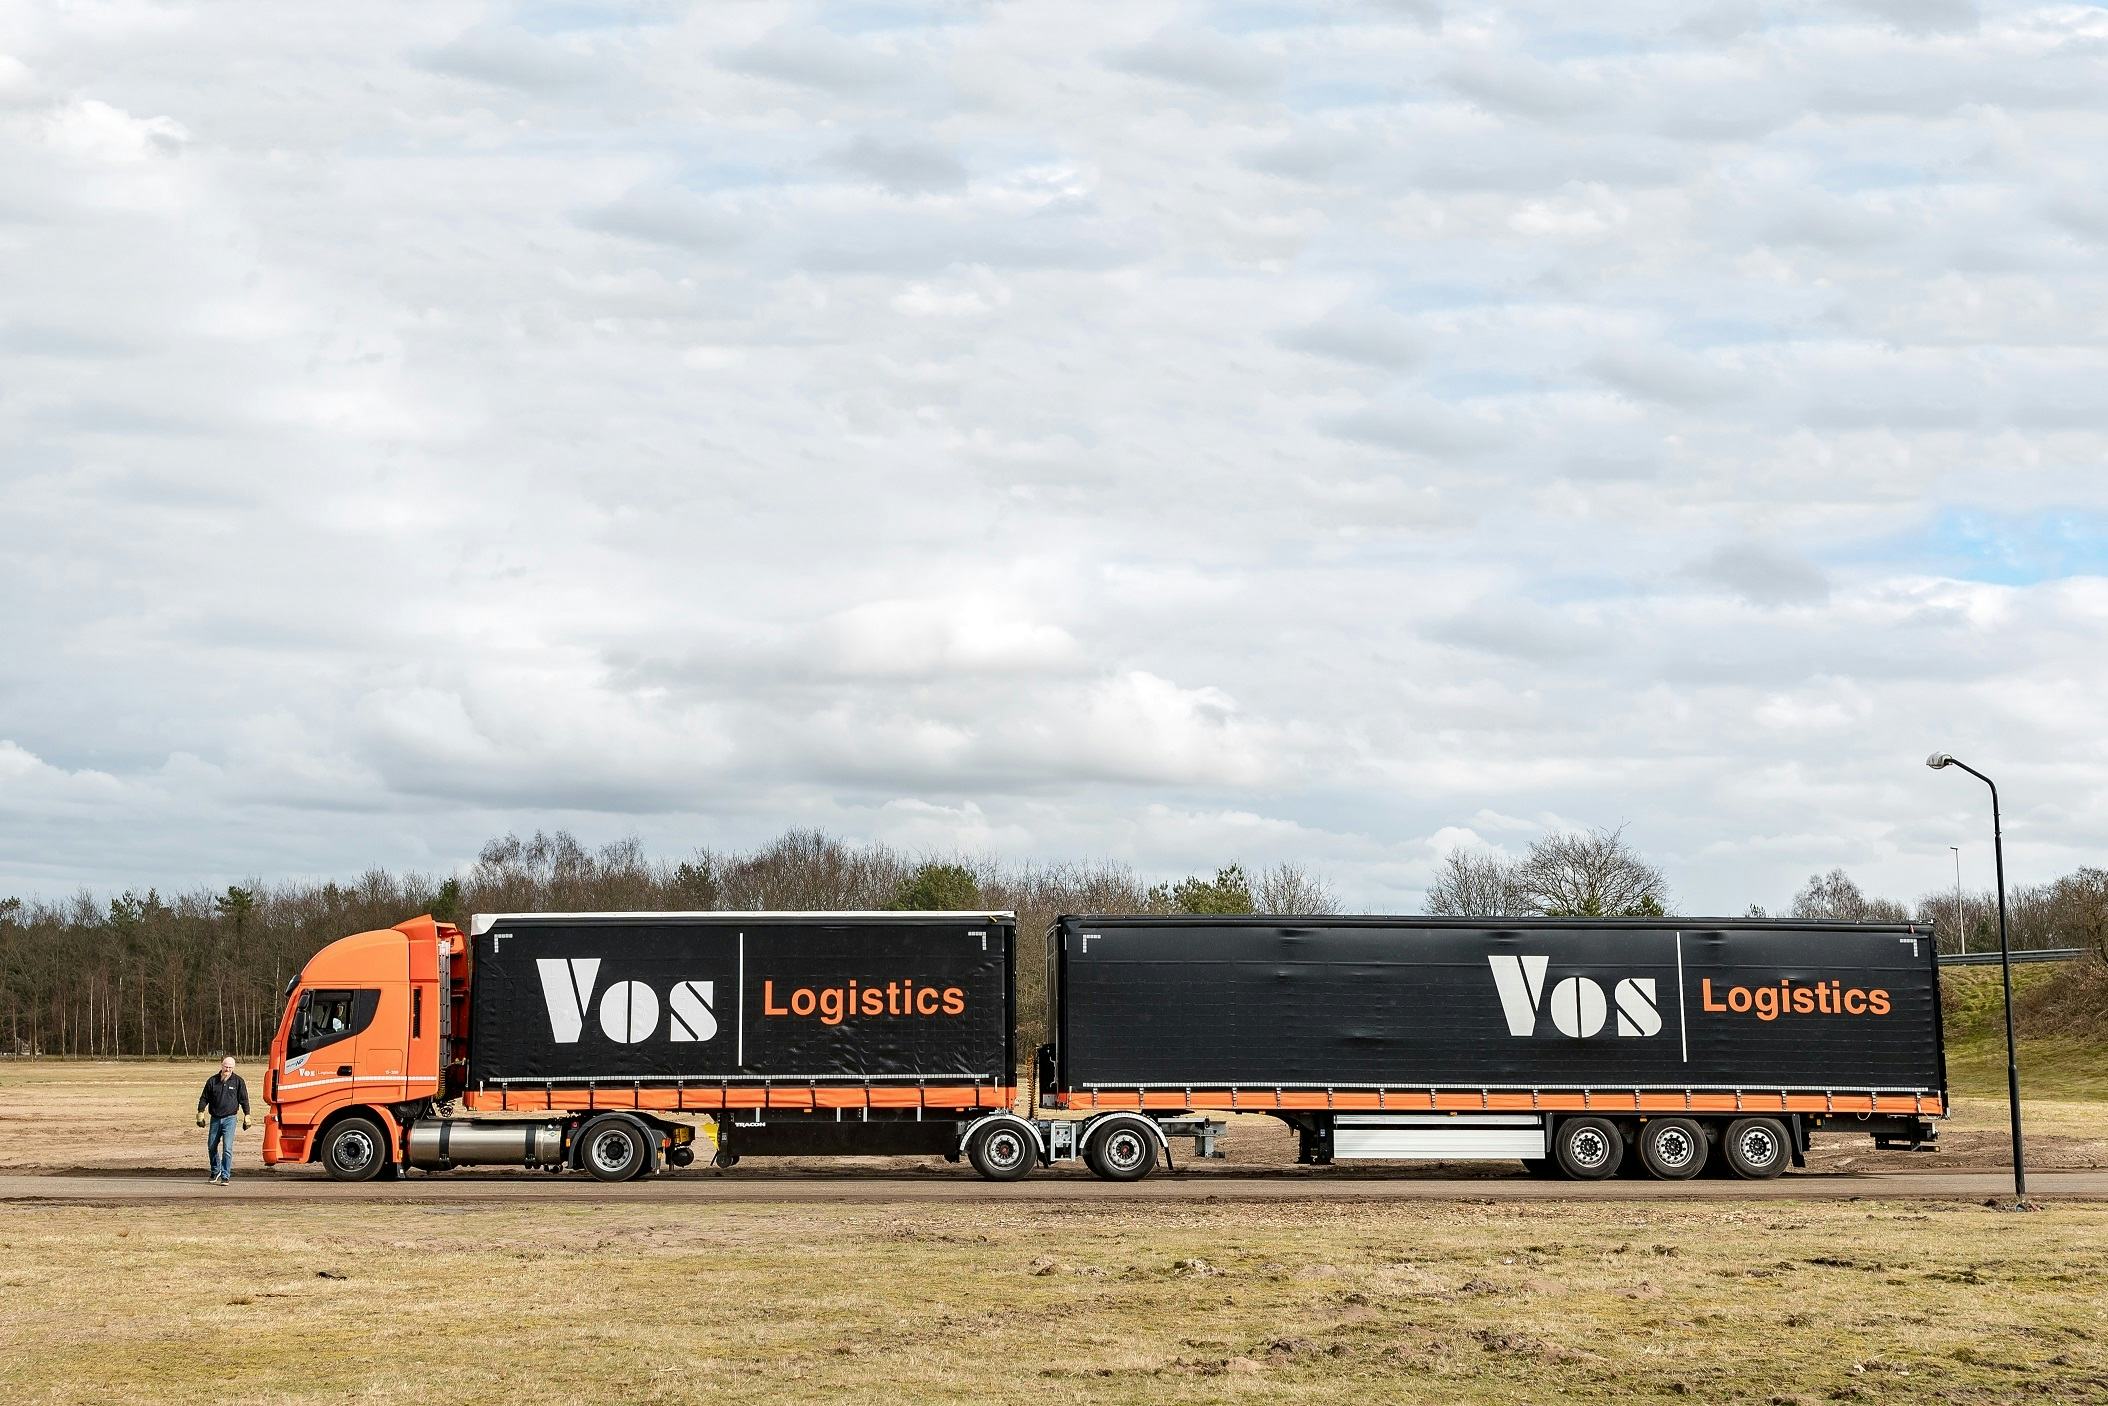 Flink meer omzet en winst voor Vos Logistics in 2018